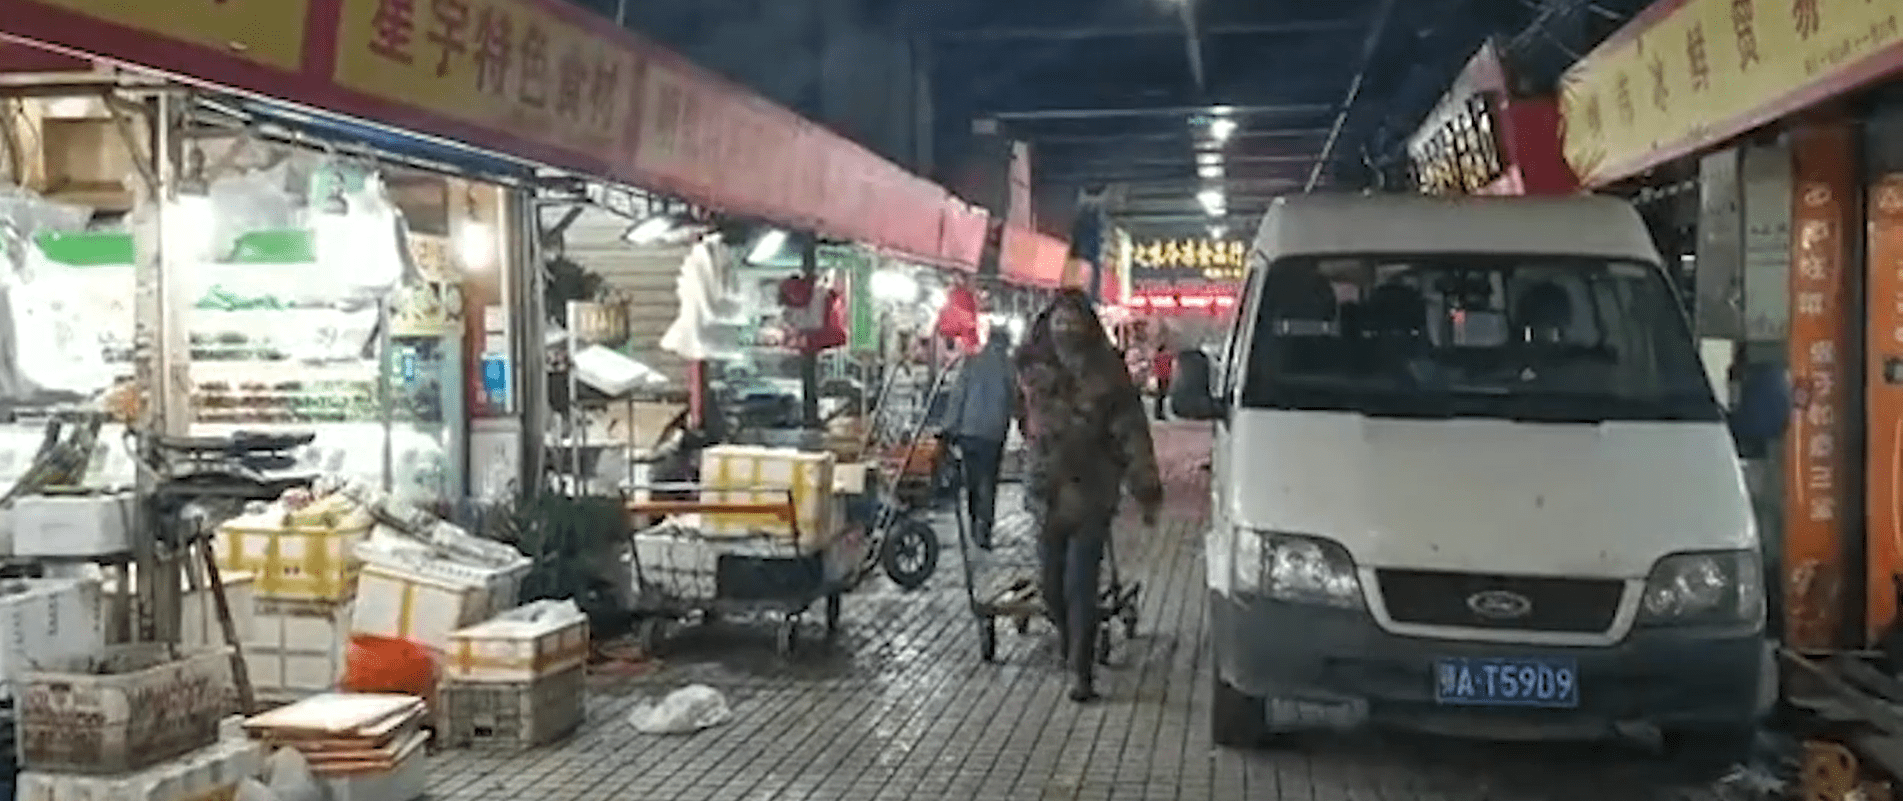 Mercado de Mariscos de Huanan en actividad. Wuhan, China. | Foto: The Paper